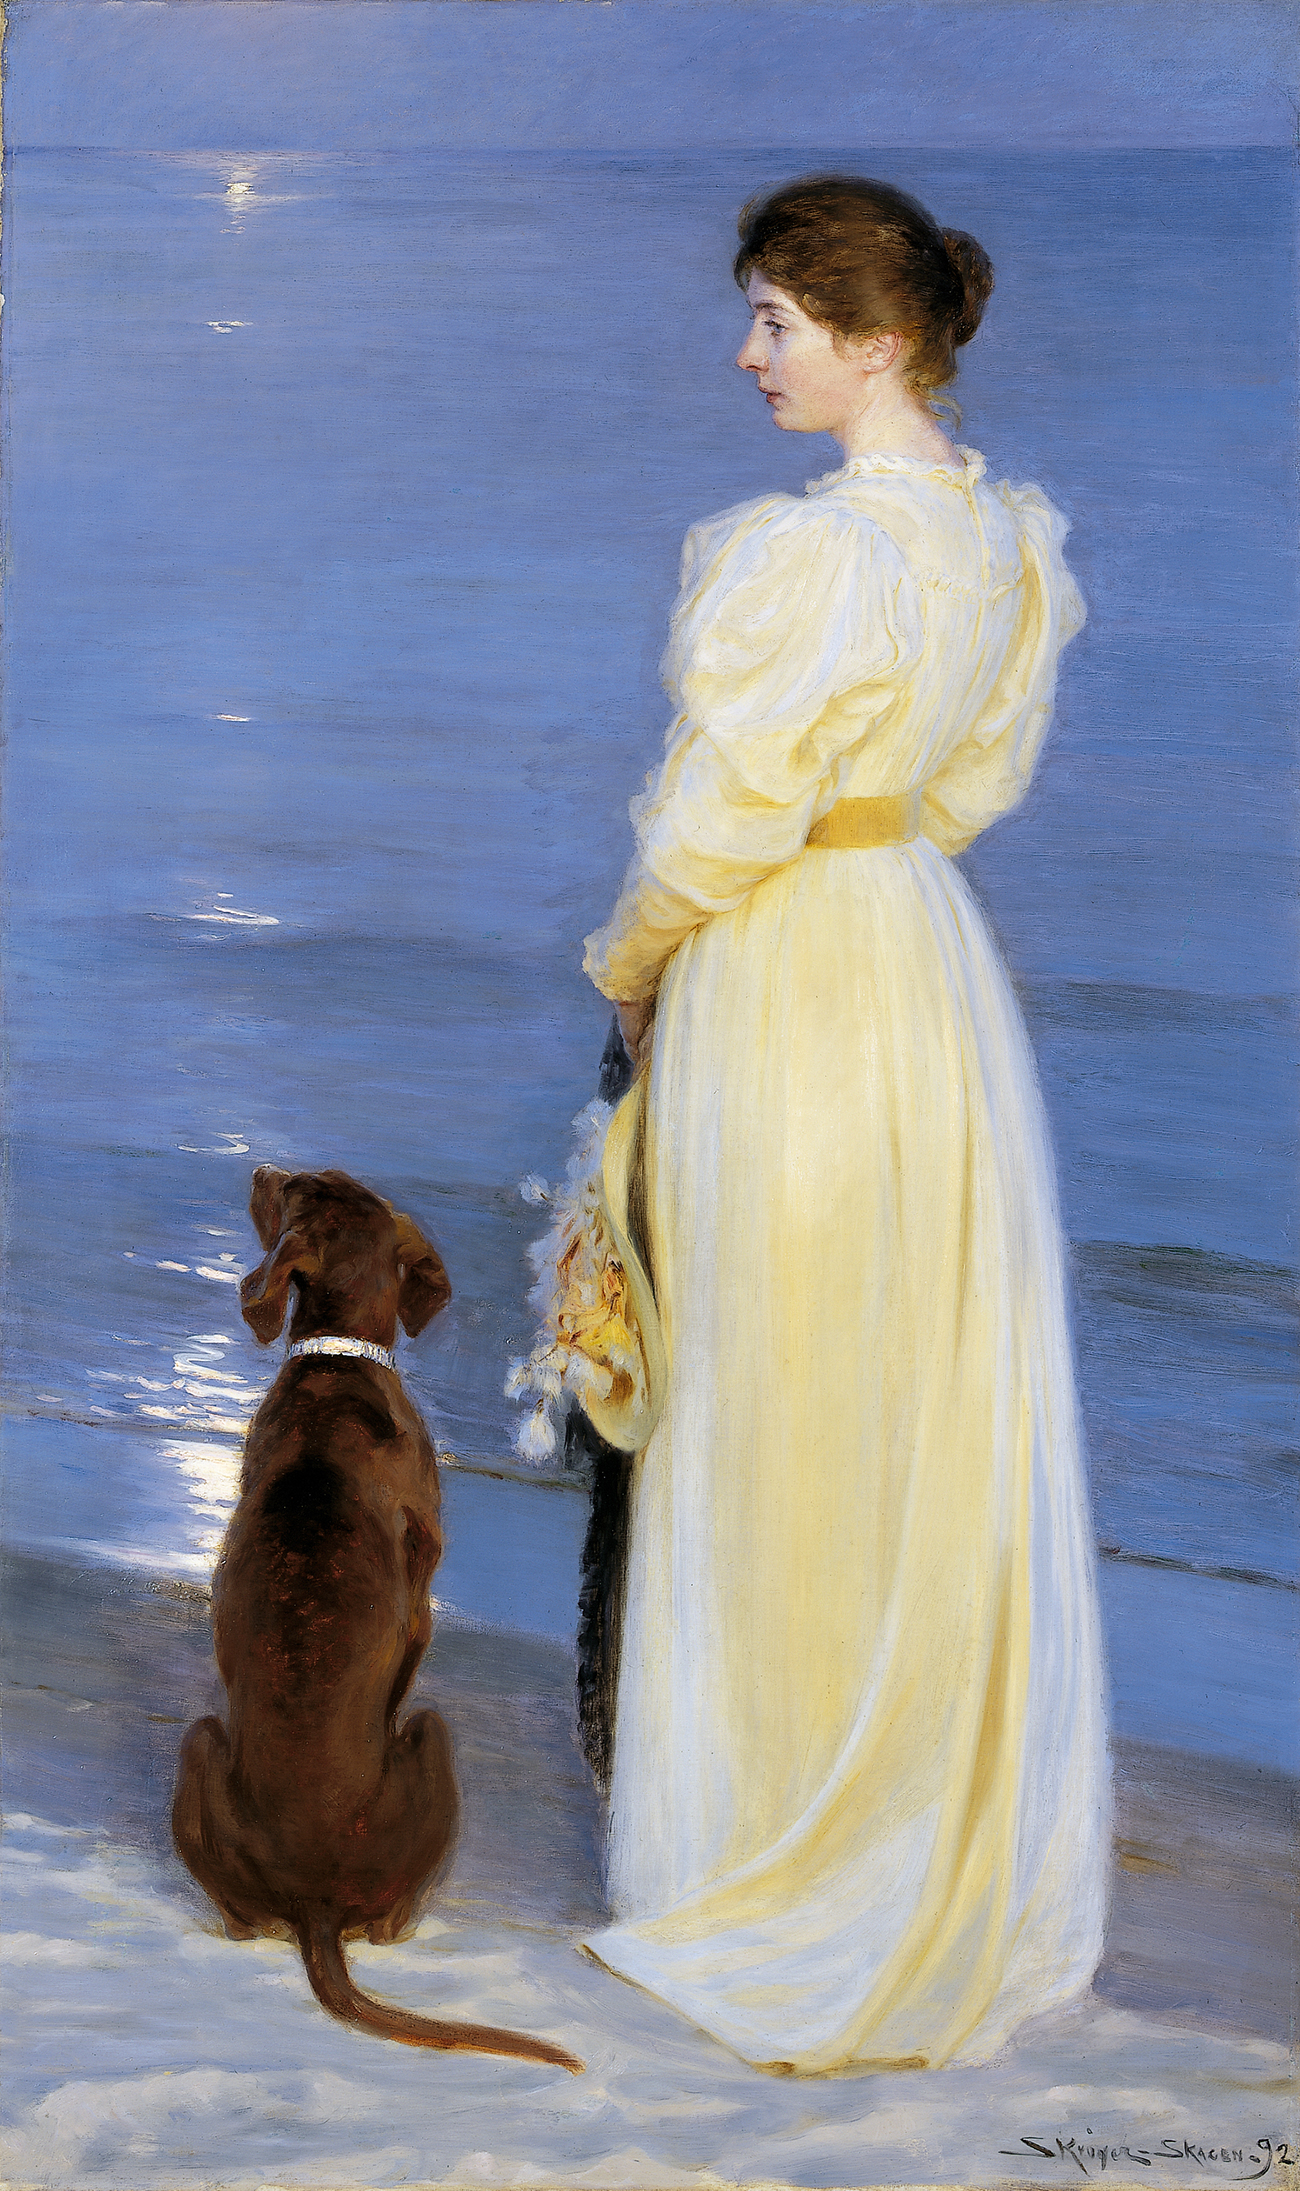 Καλοκαιρινό δειλινό στο Σκάγκεν by P.S. Krøyer - 1892 - 206 x 123 cm 